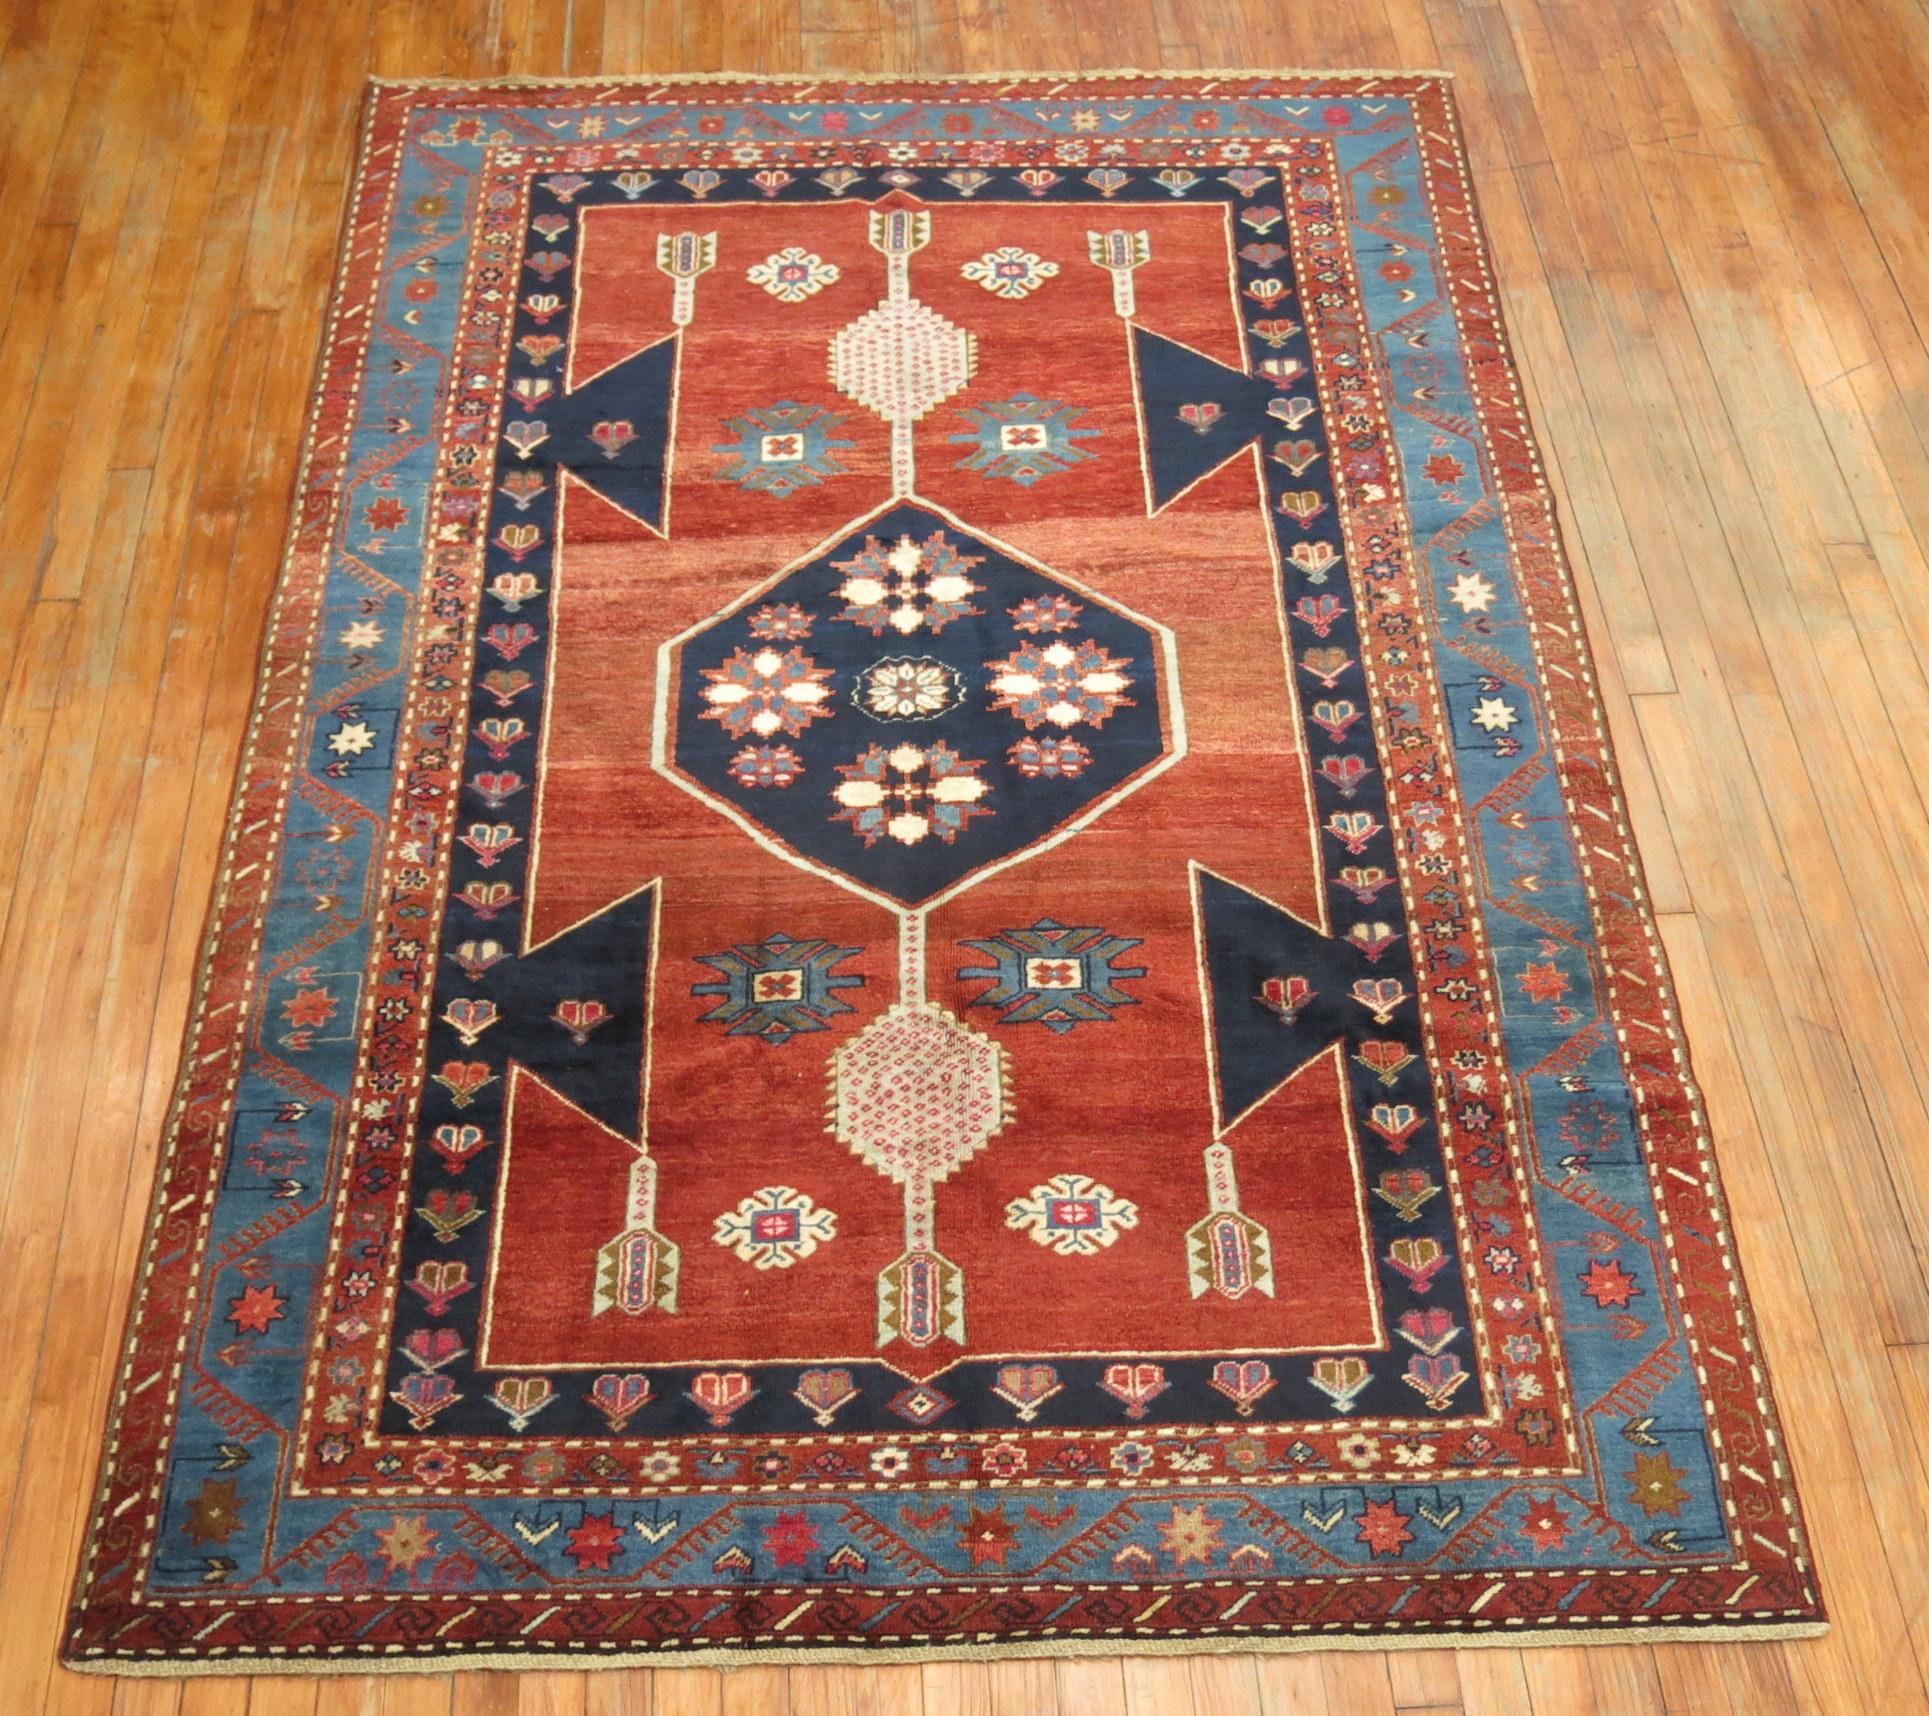 An authentic decorative vintage Kazak rug.